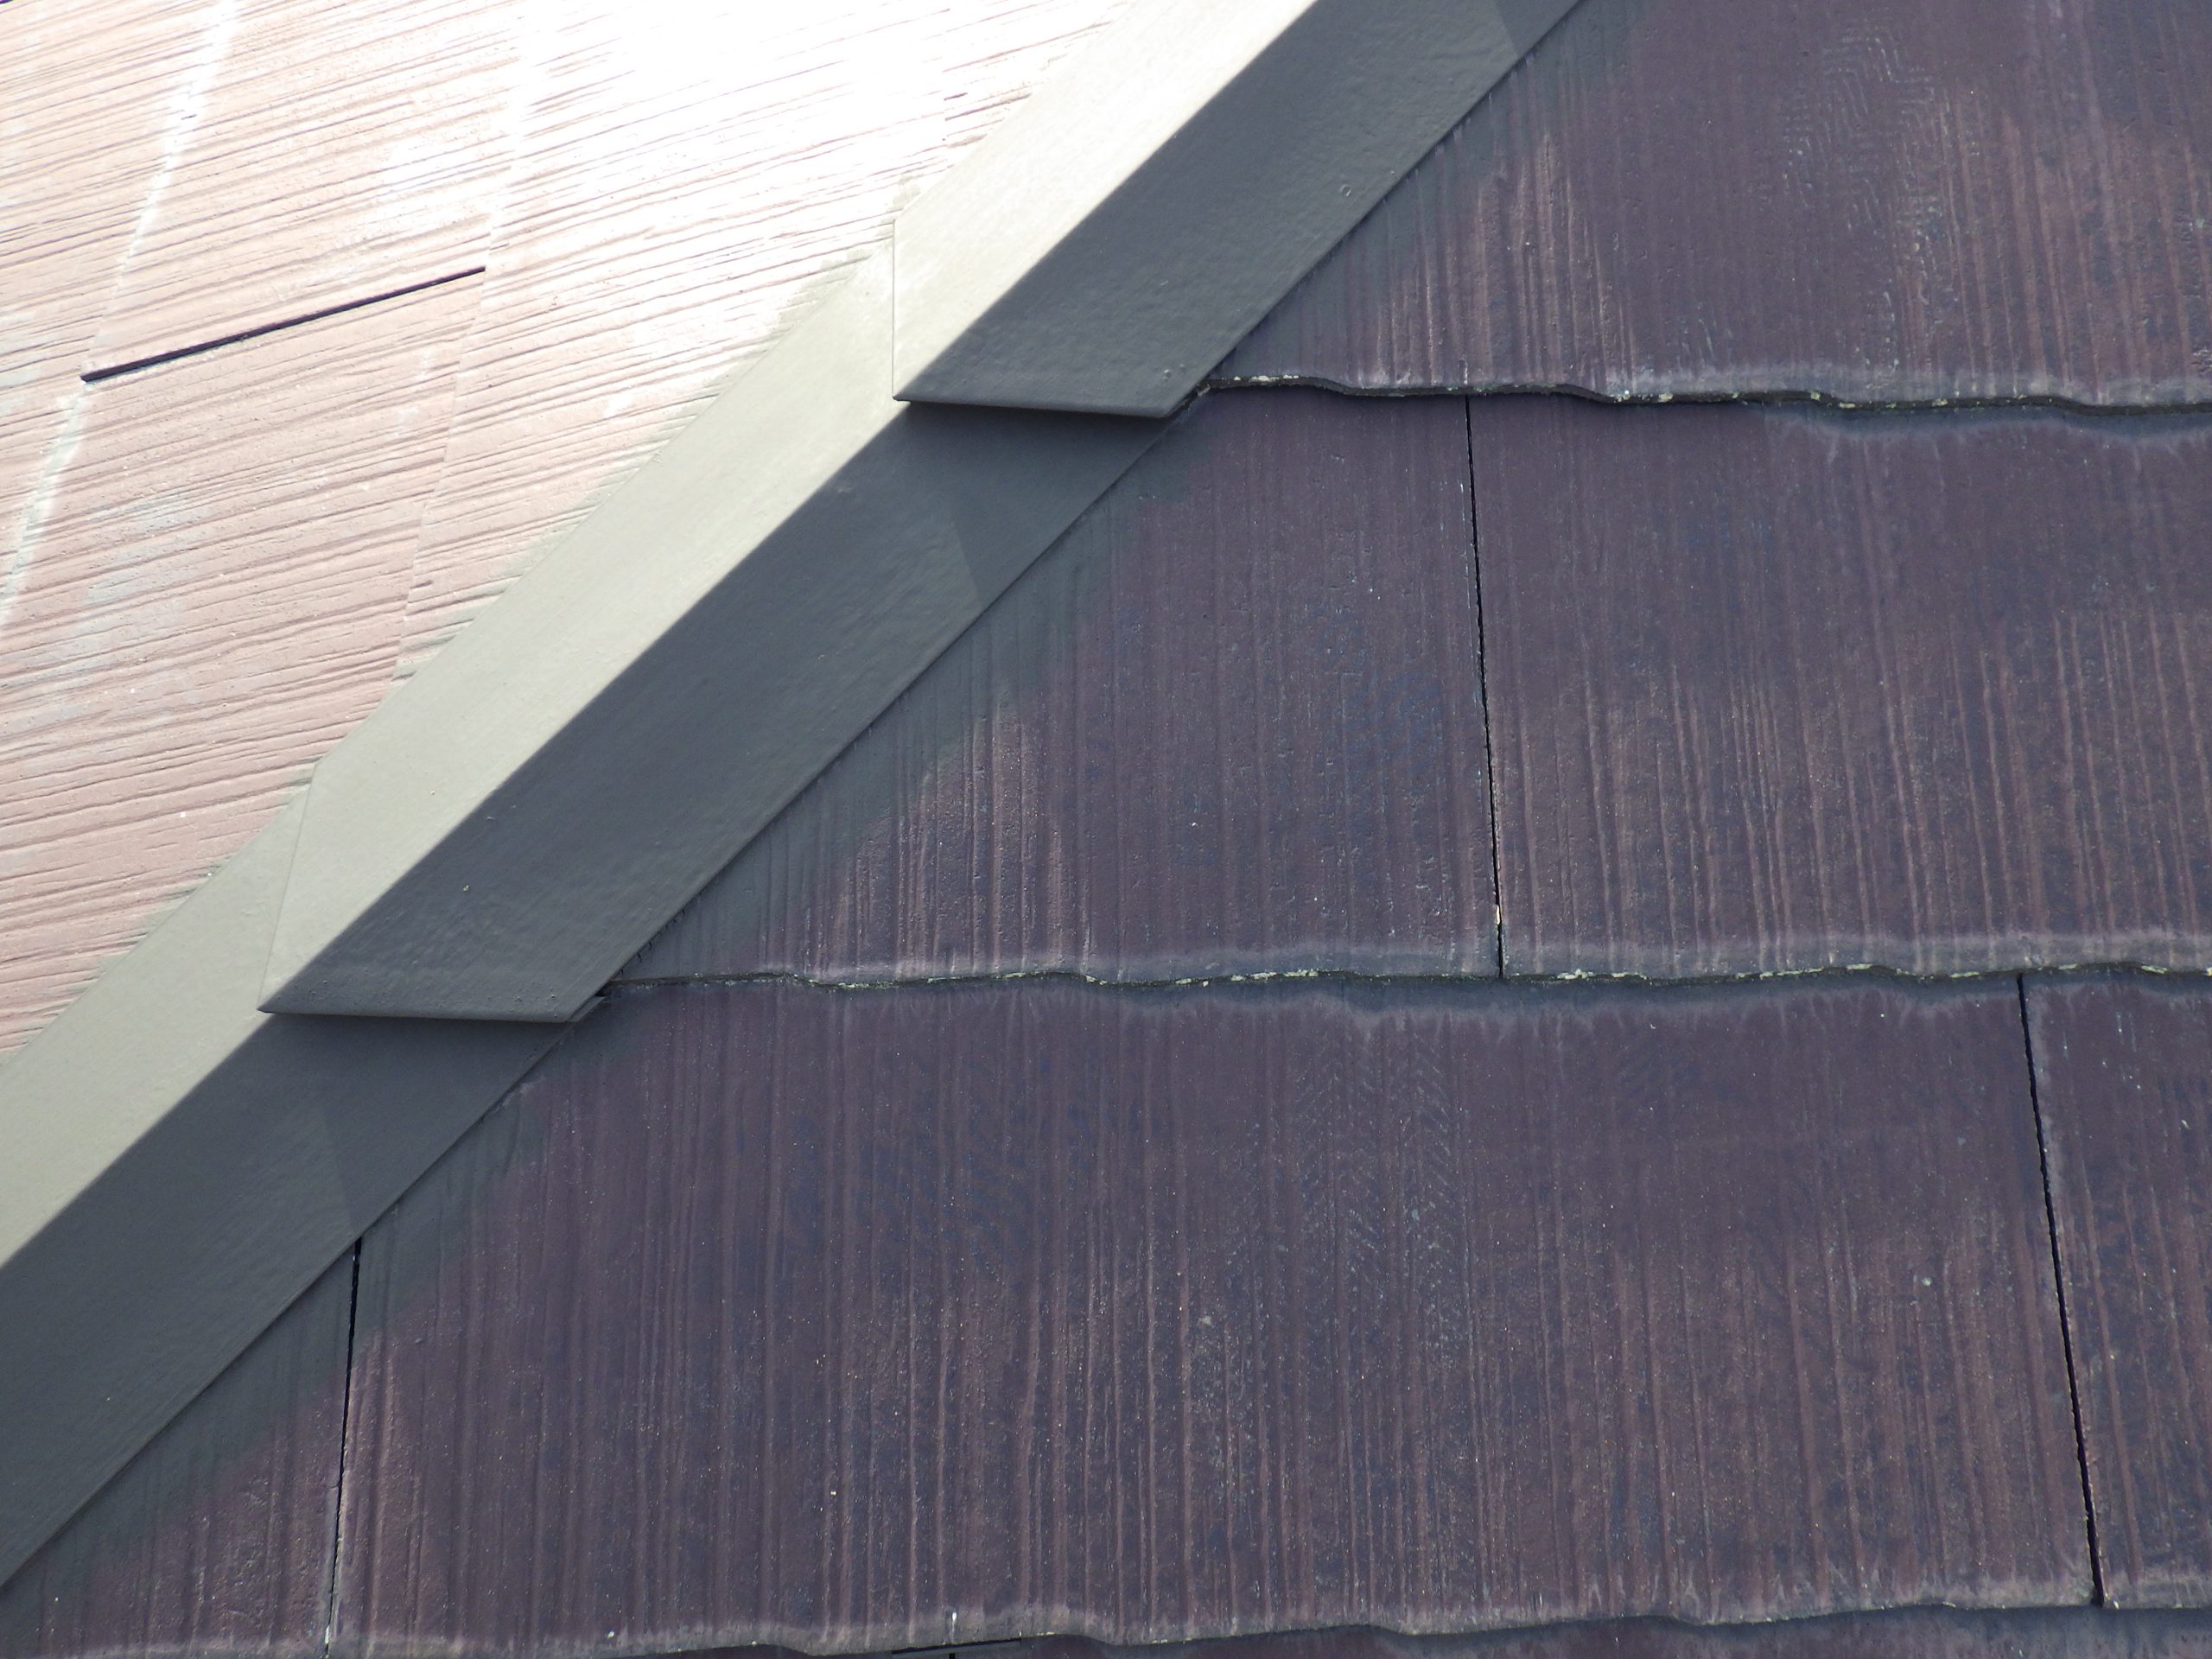 【さび止め材塗布 状況】
棟板金等の金属部は今後さびが発生しないようにしっかり研磨して、さび止め材を塗ります。